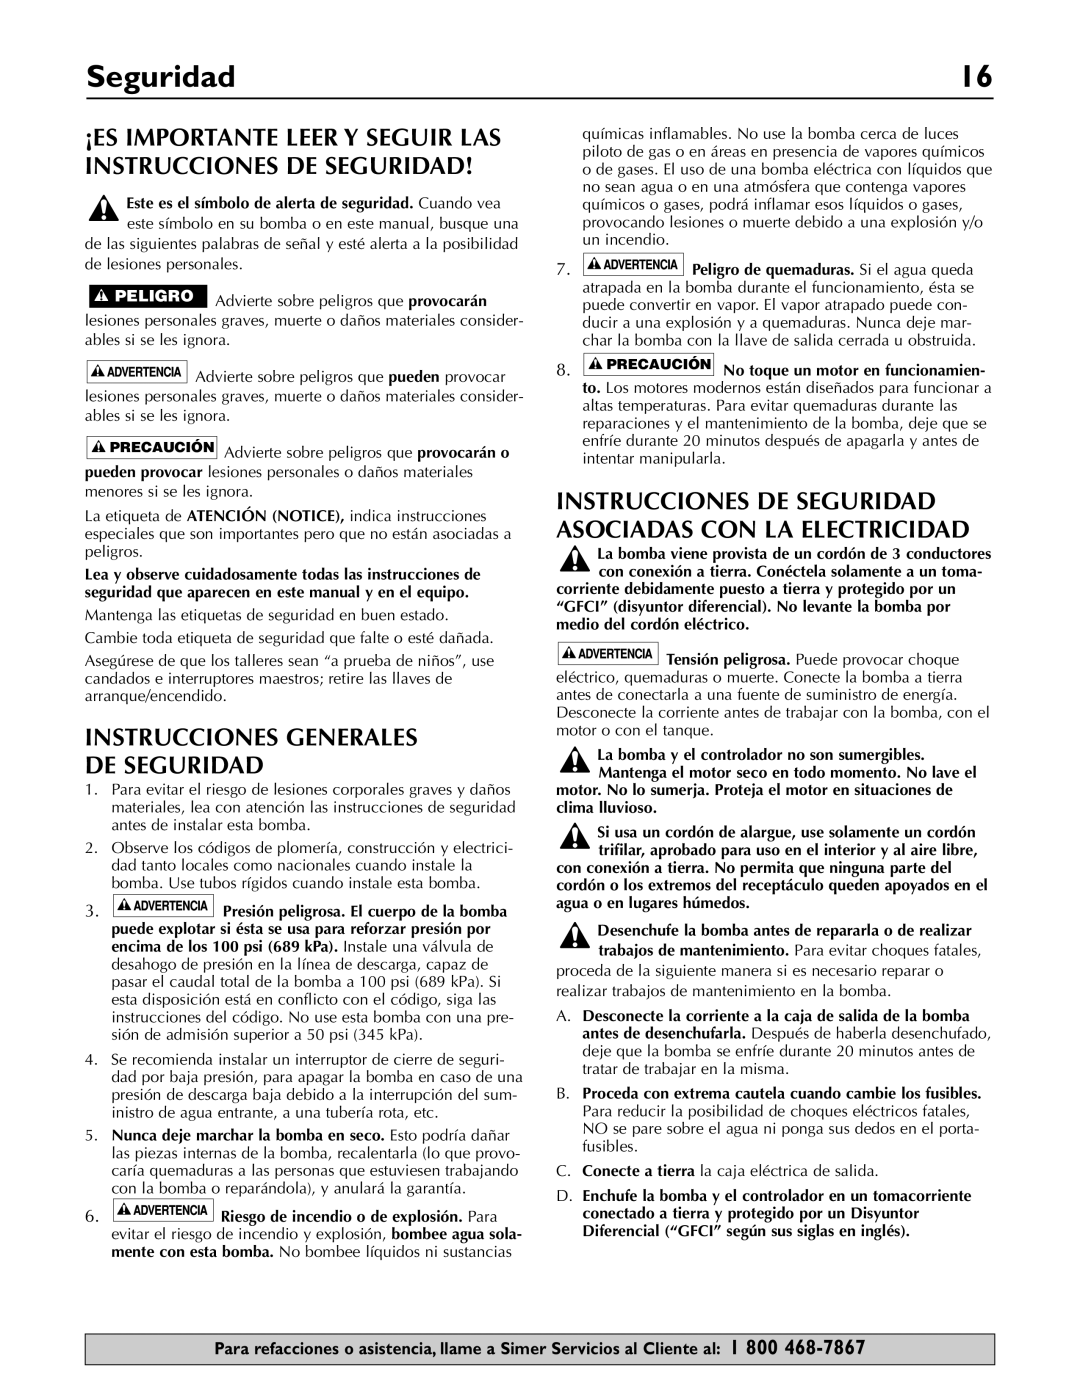 Simer Pumps 3075SS-01 owner manual Instrucciones Generales De Seguridad 